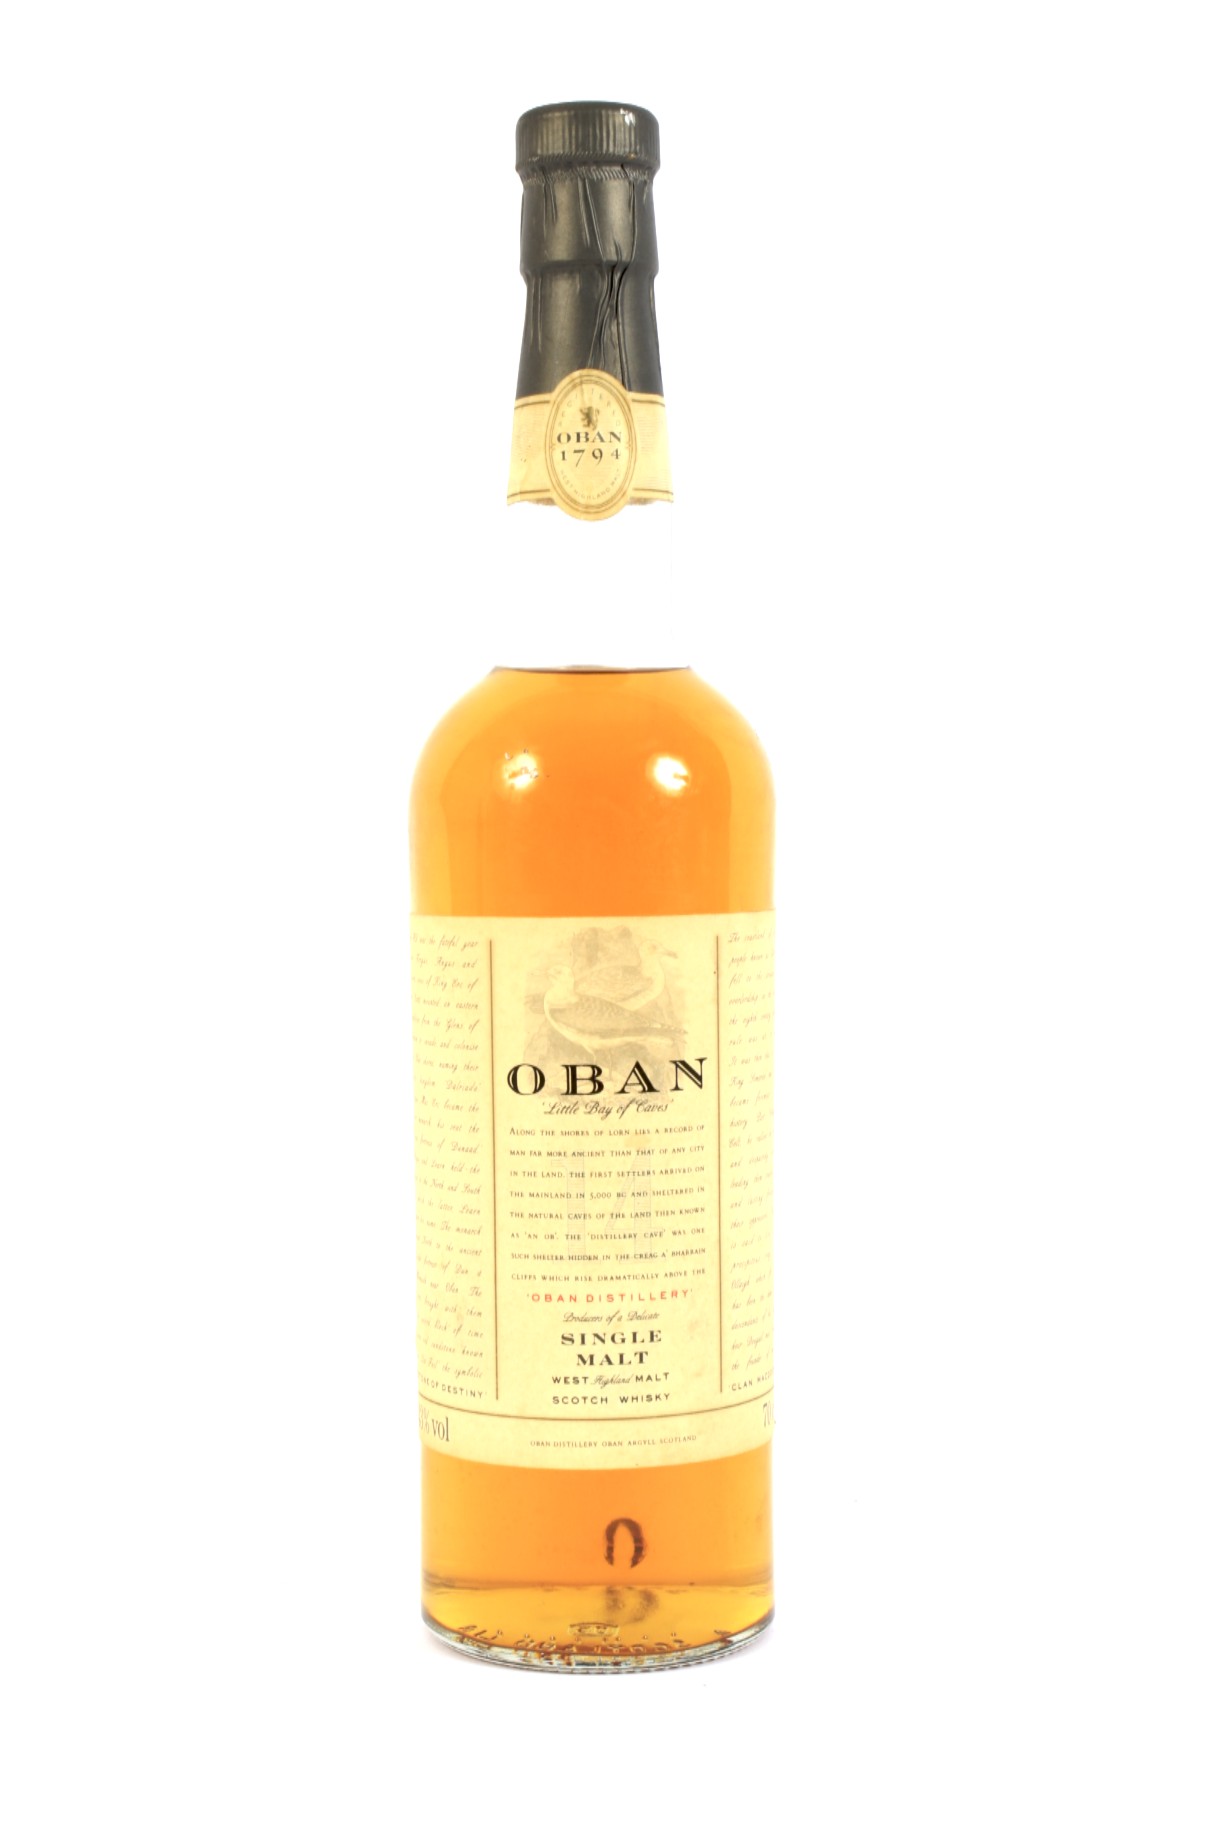 A bottle of Oban 14 year old single malt Scotch whisky.